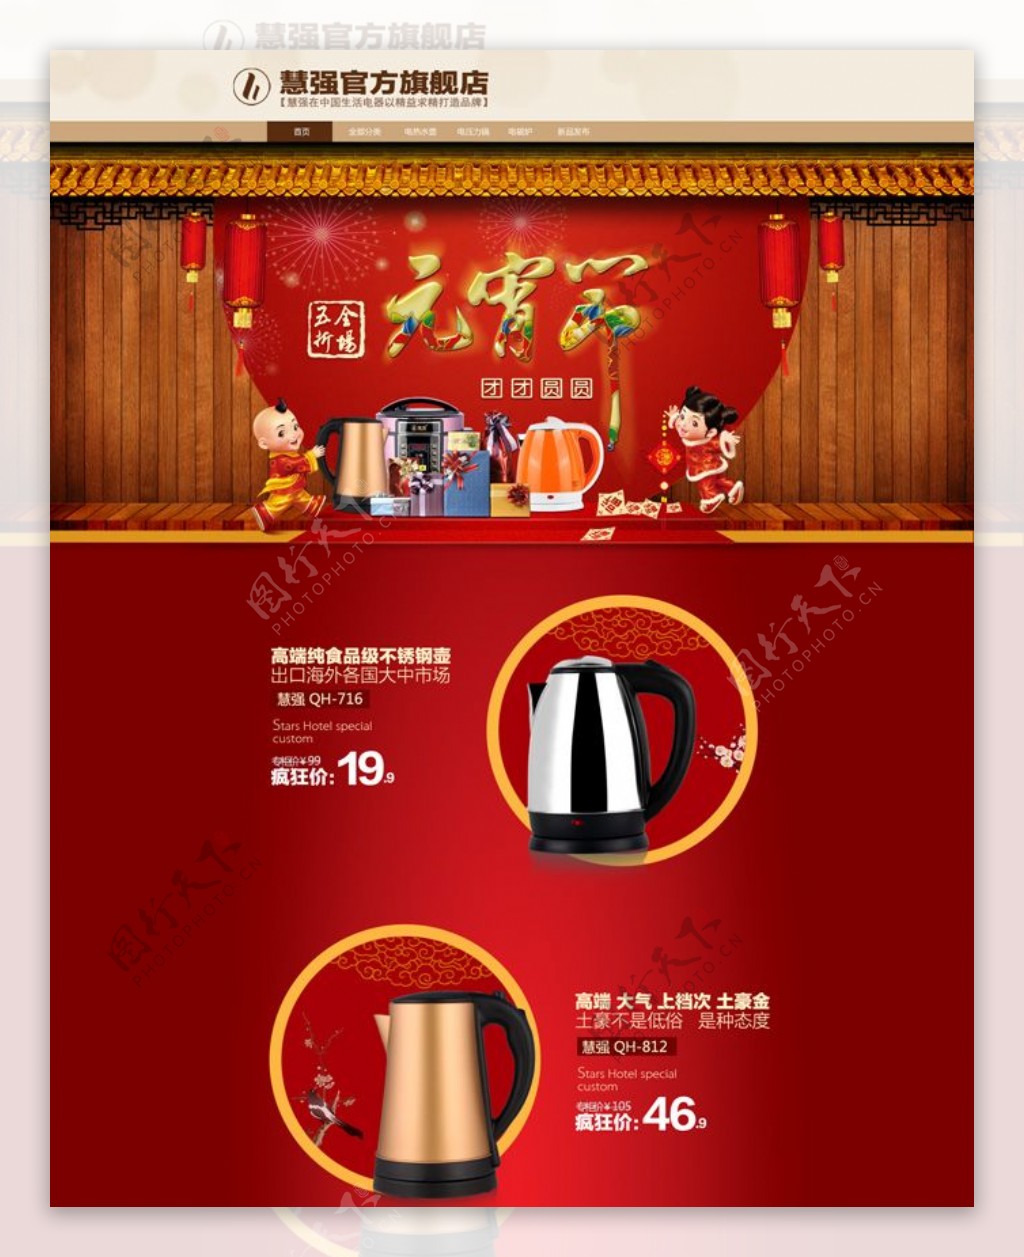 节日官方旗舰店网站促销设计模板